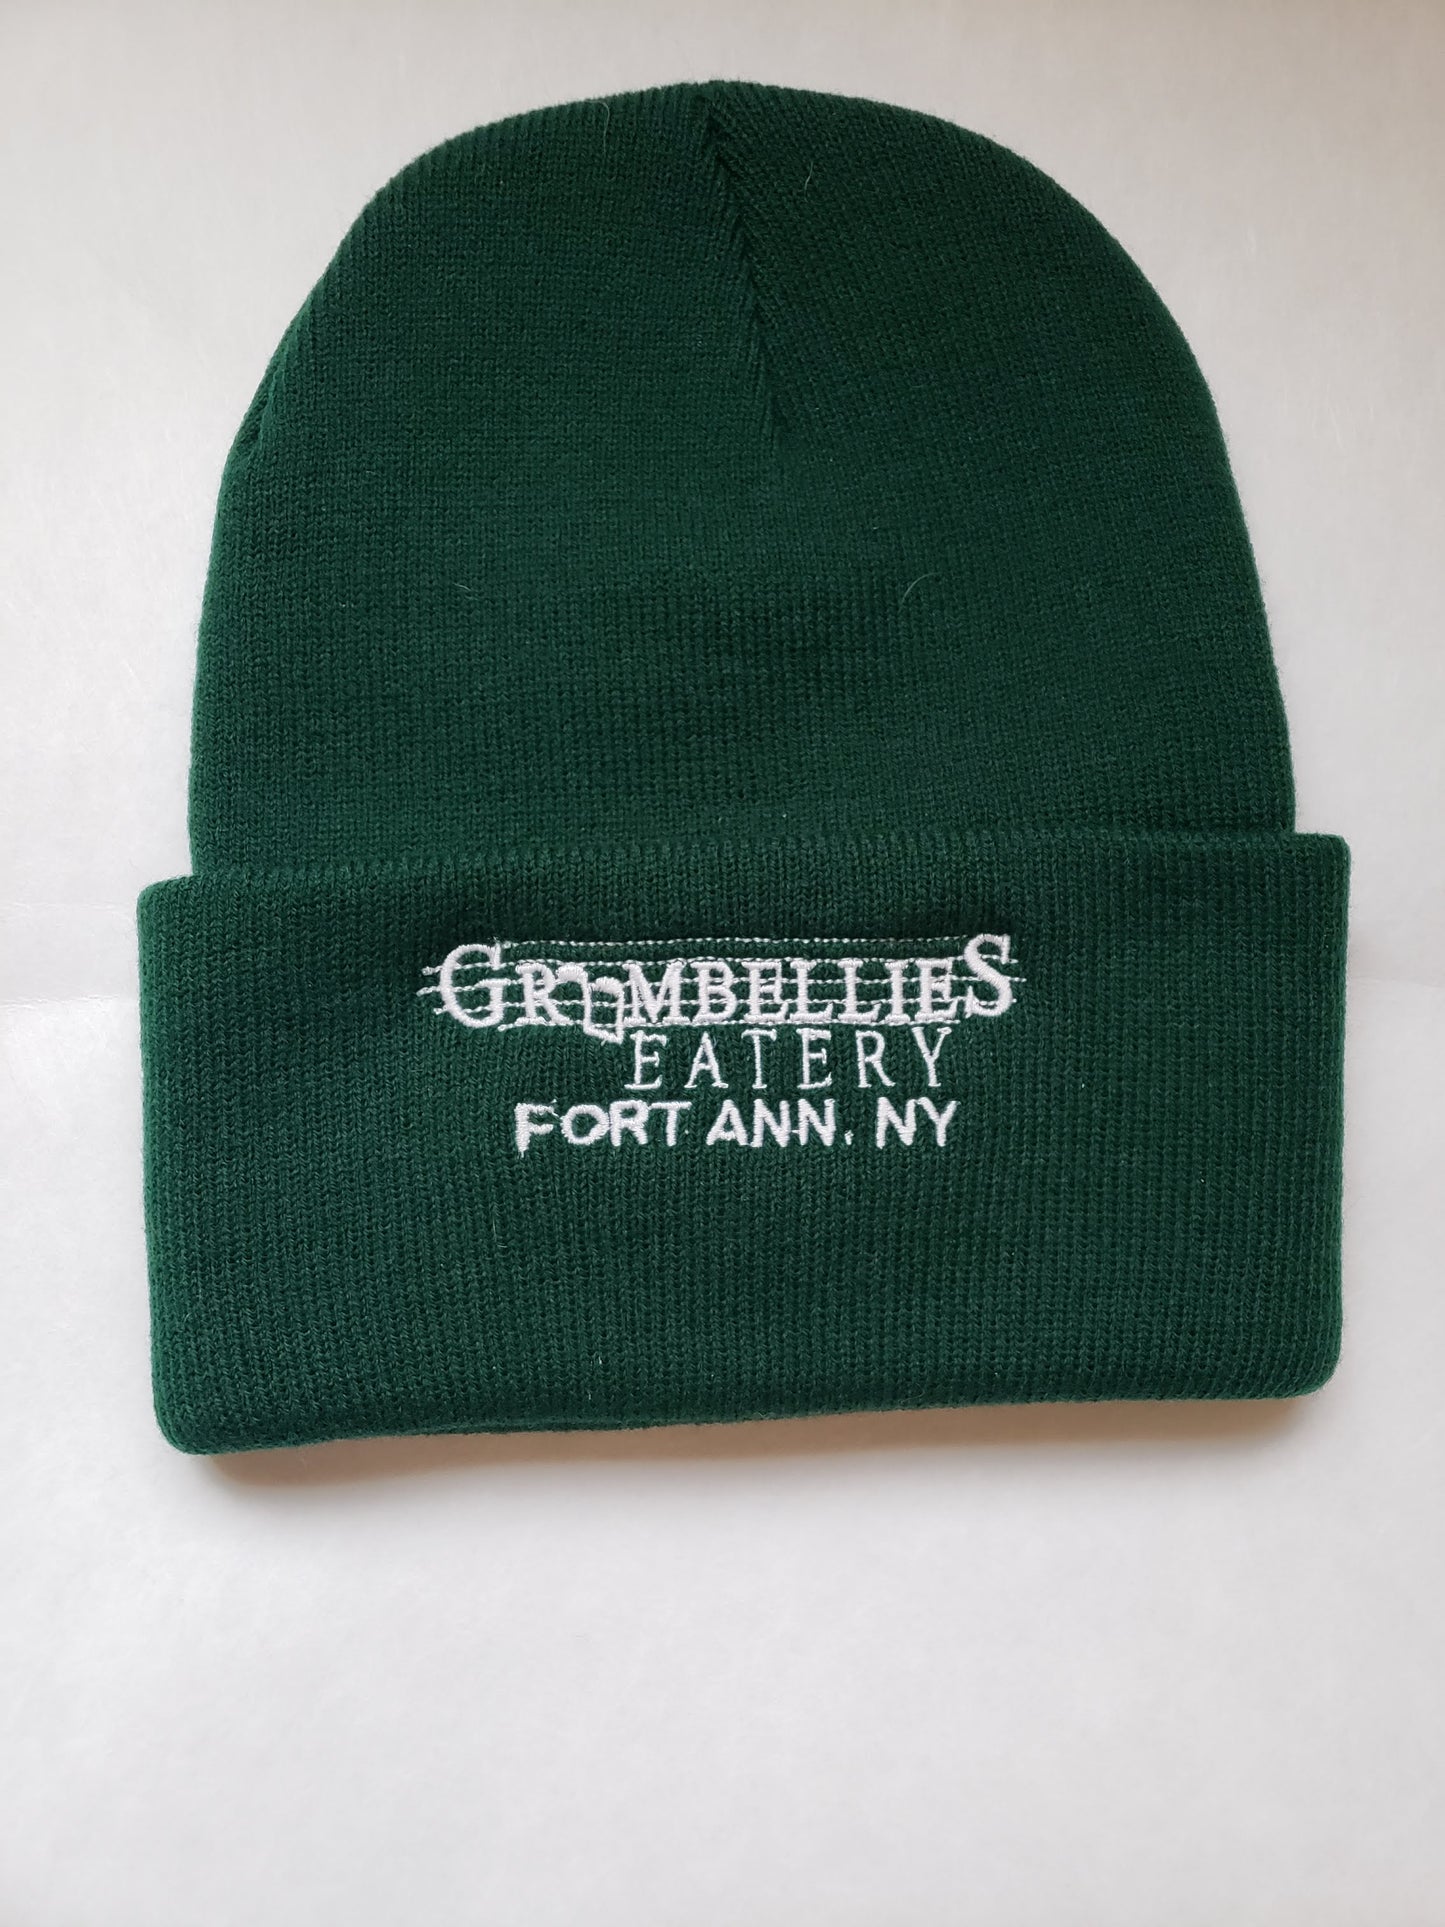 Grumbellies Winter Hats